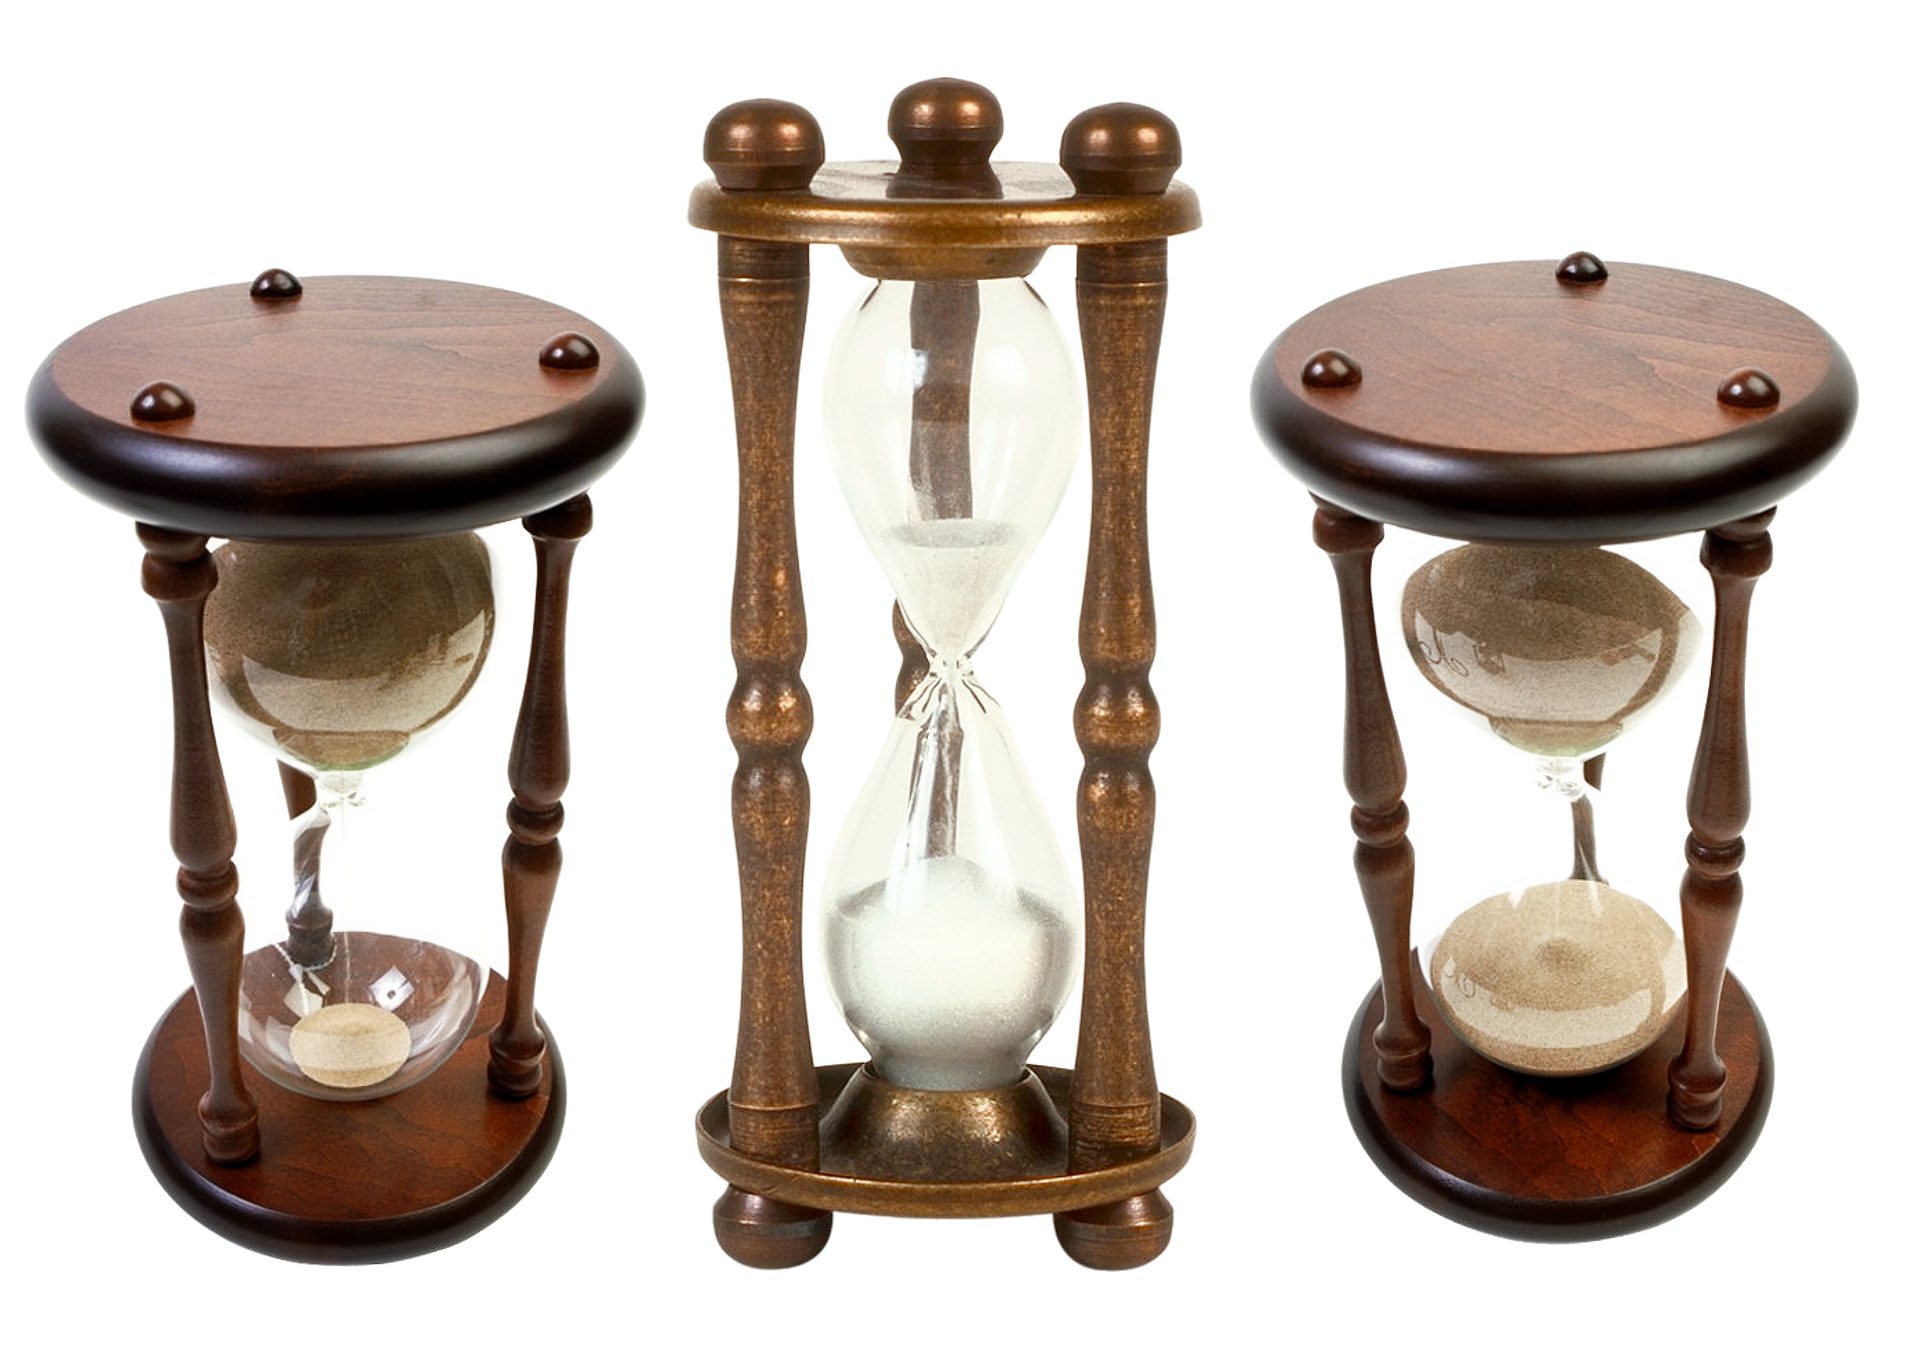 Песочные часы максимальное время. Песочные часы. Старые песочные часы. Старинные песочные часы. Антикварные песочные часы.